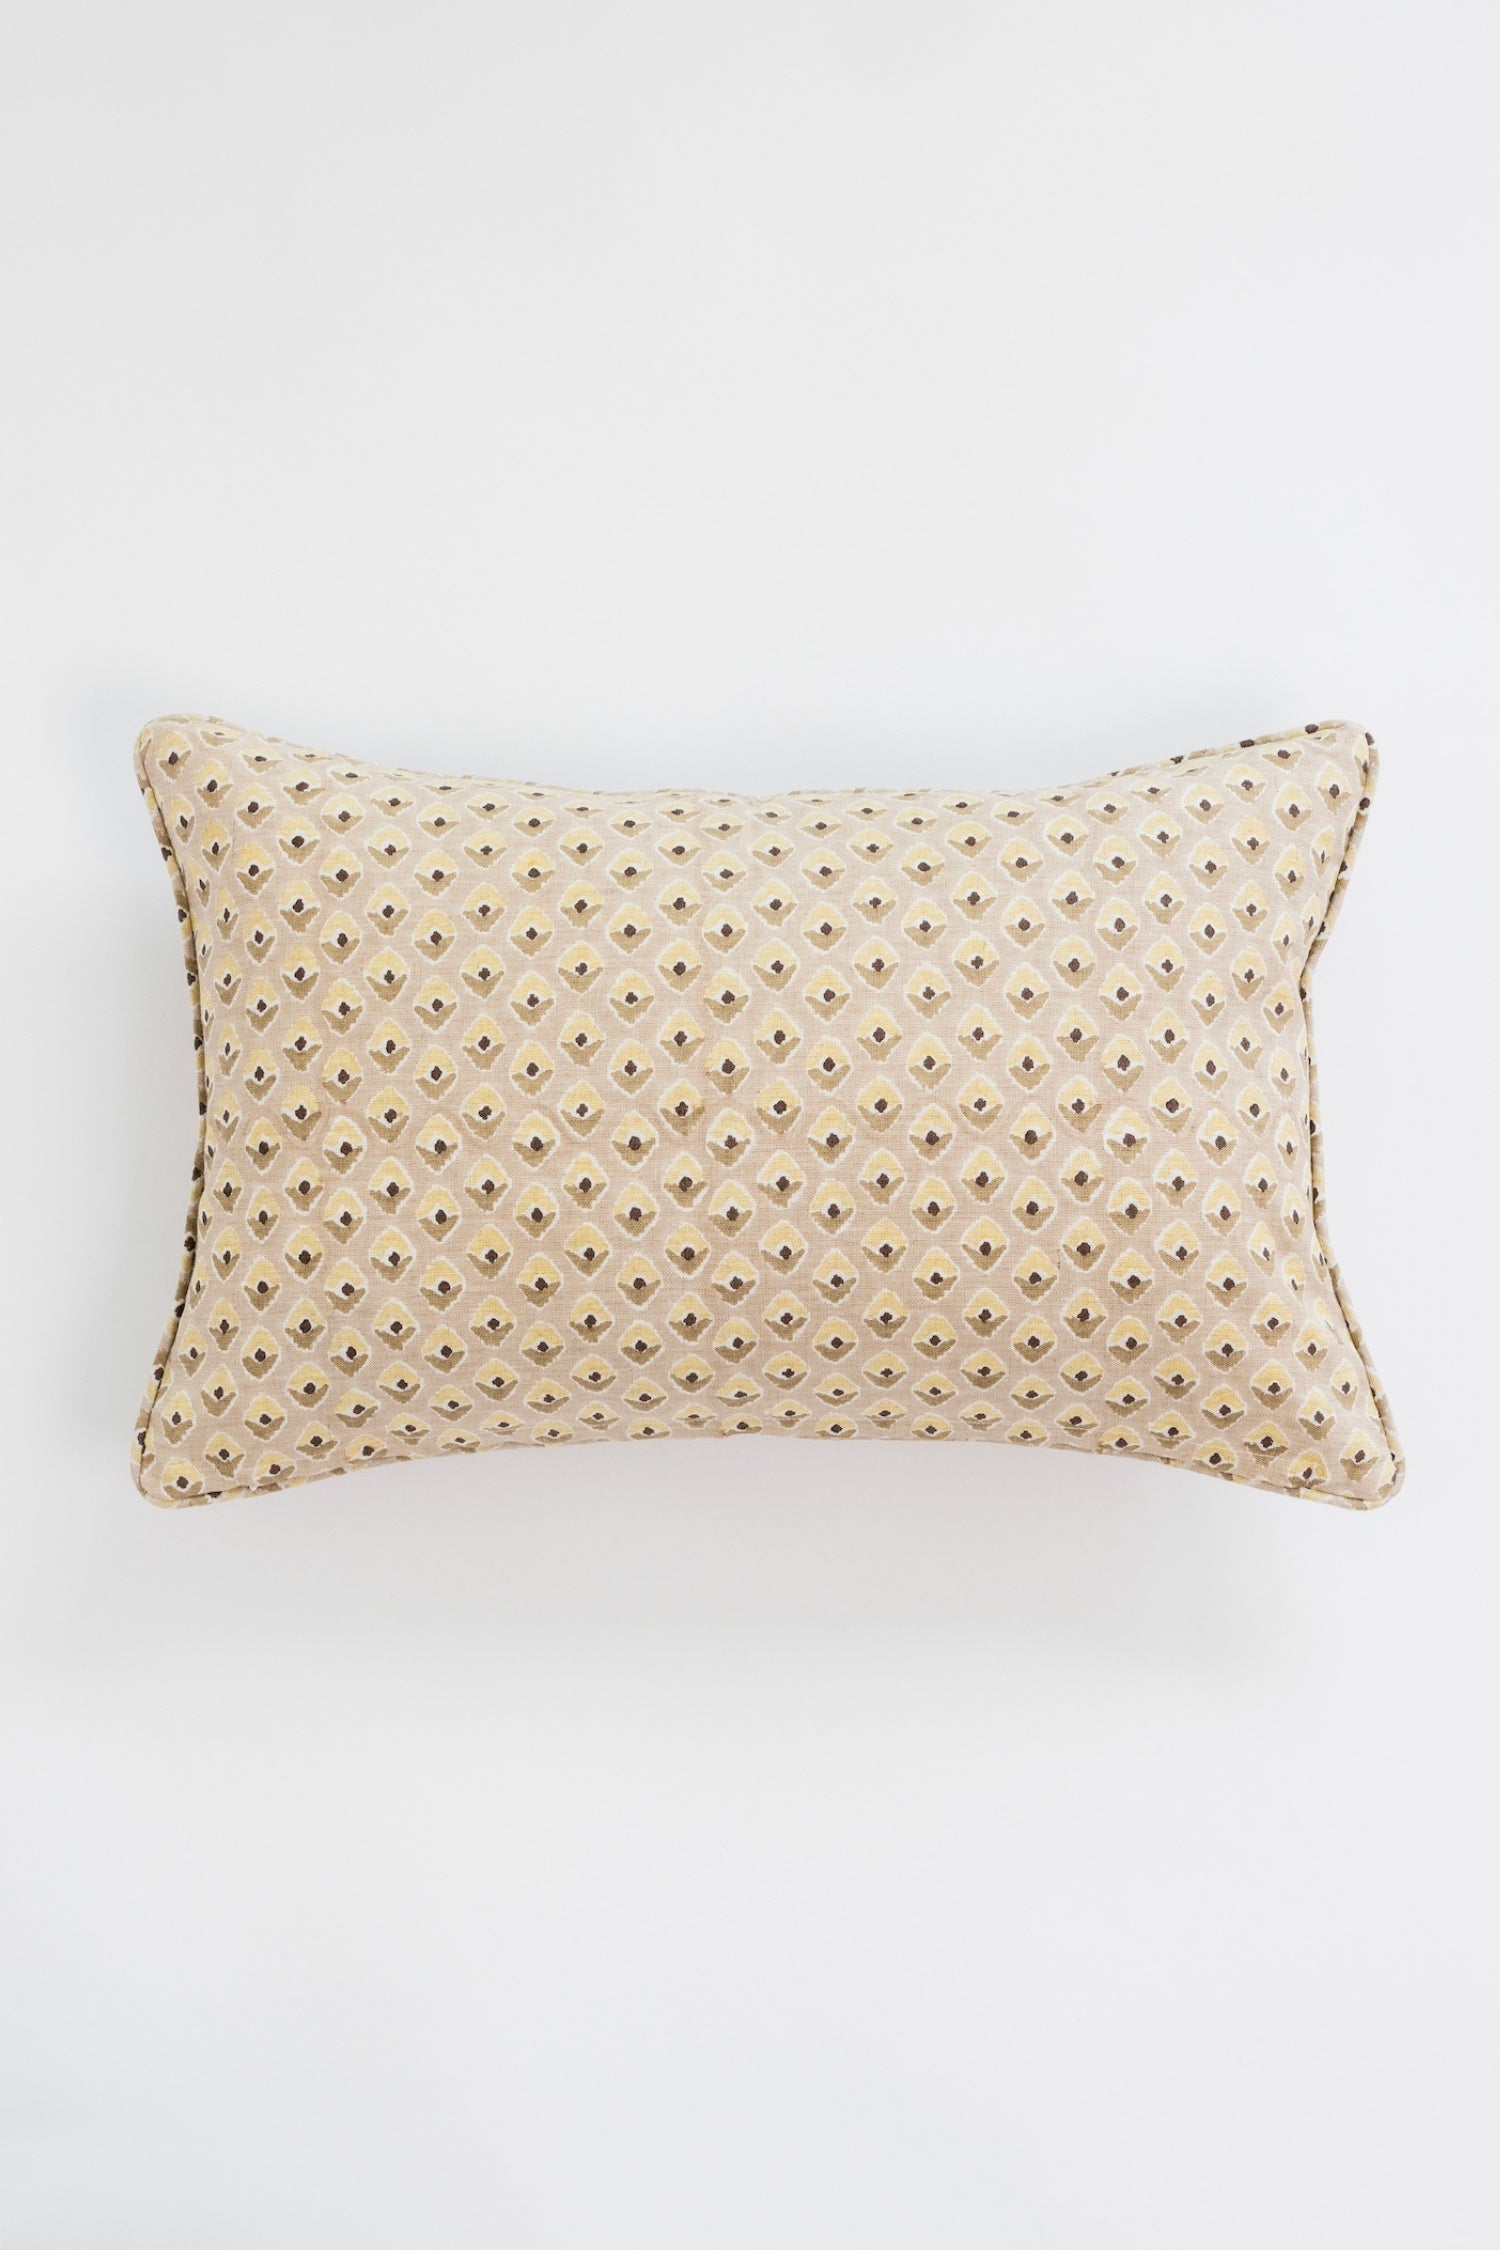 Cormac Linen Lumbar Pillow - Tan